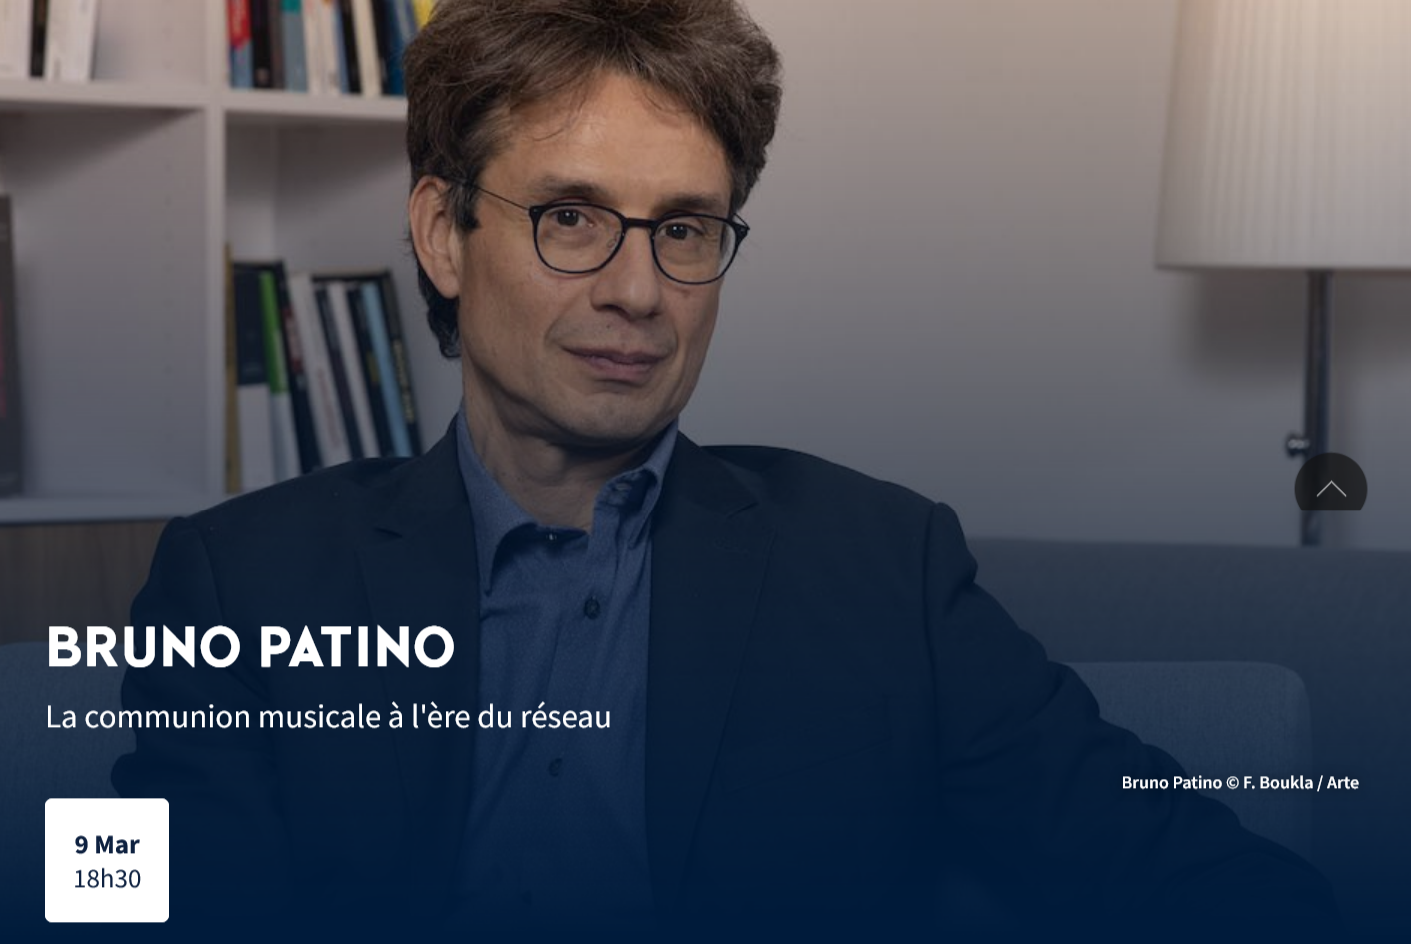 La communion musicale à l’ère du réseau, conférence de Bruno Patino